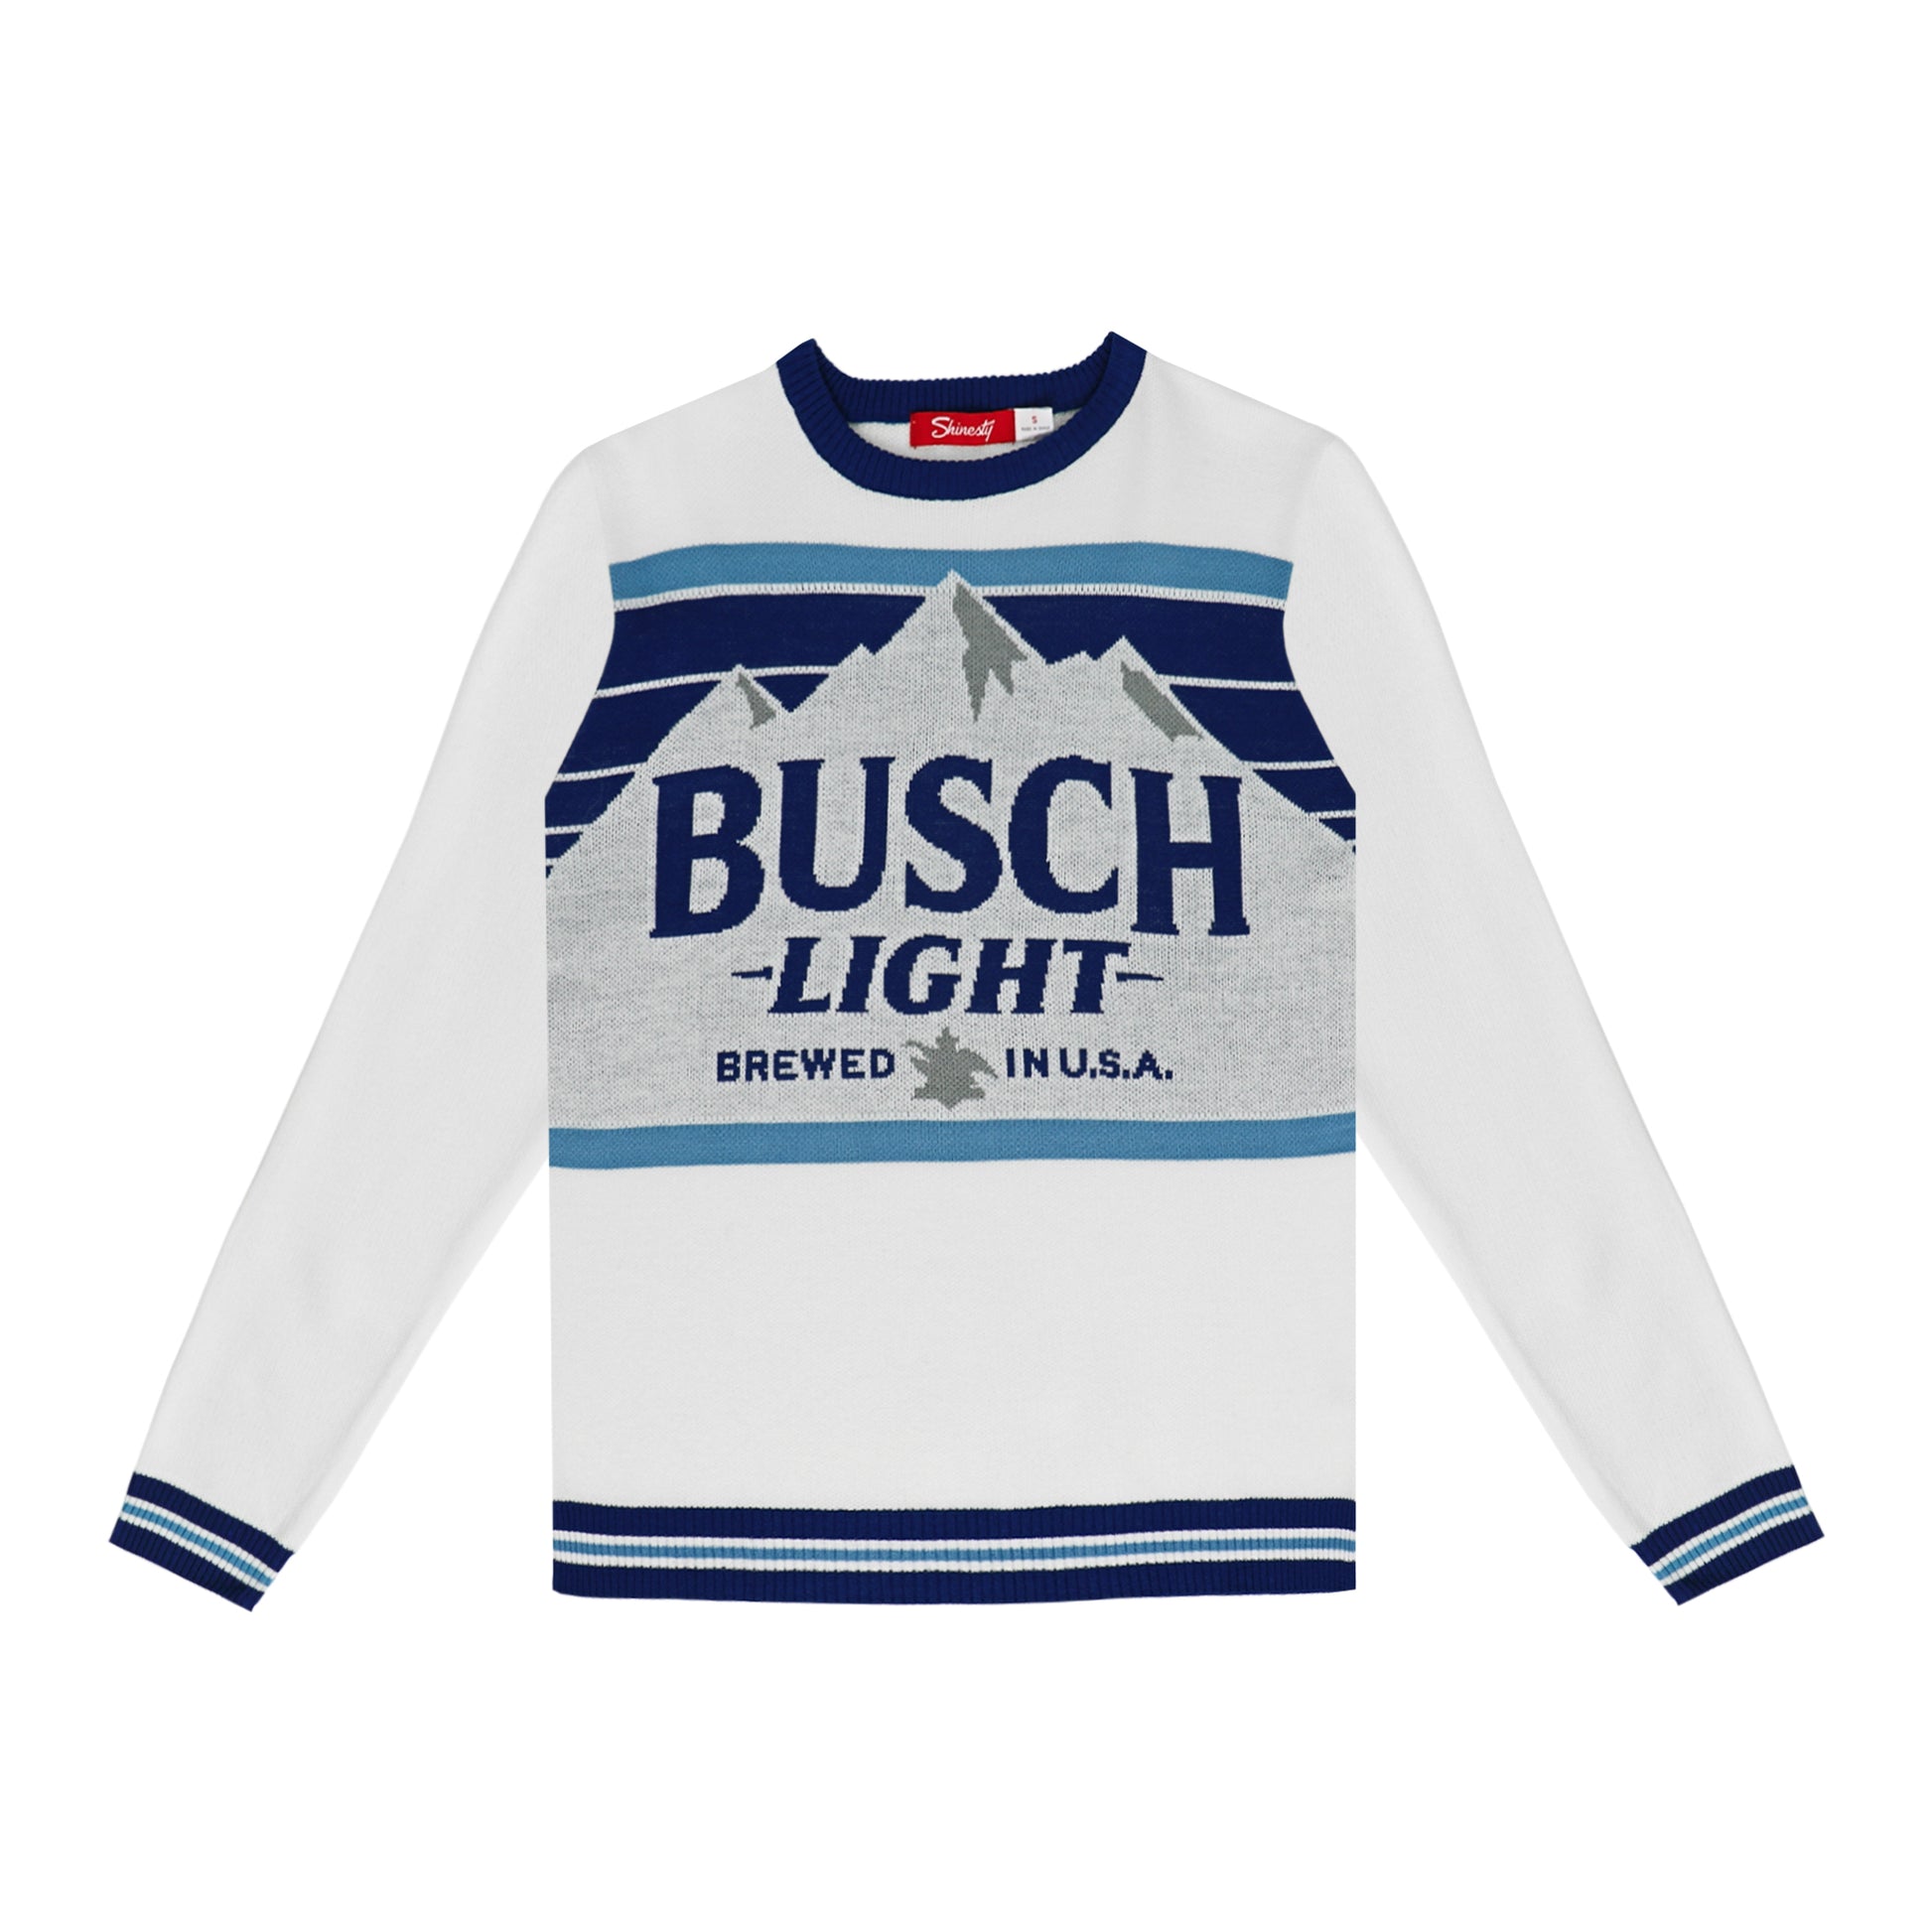 Busch Light holiday sweater, Busch Light Mountain logo on front